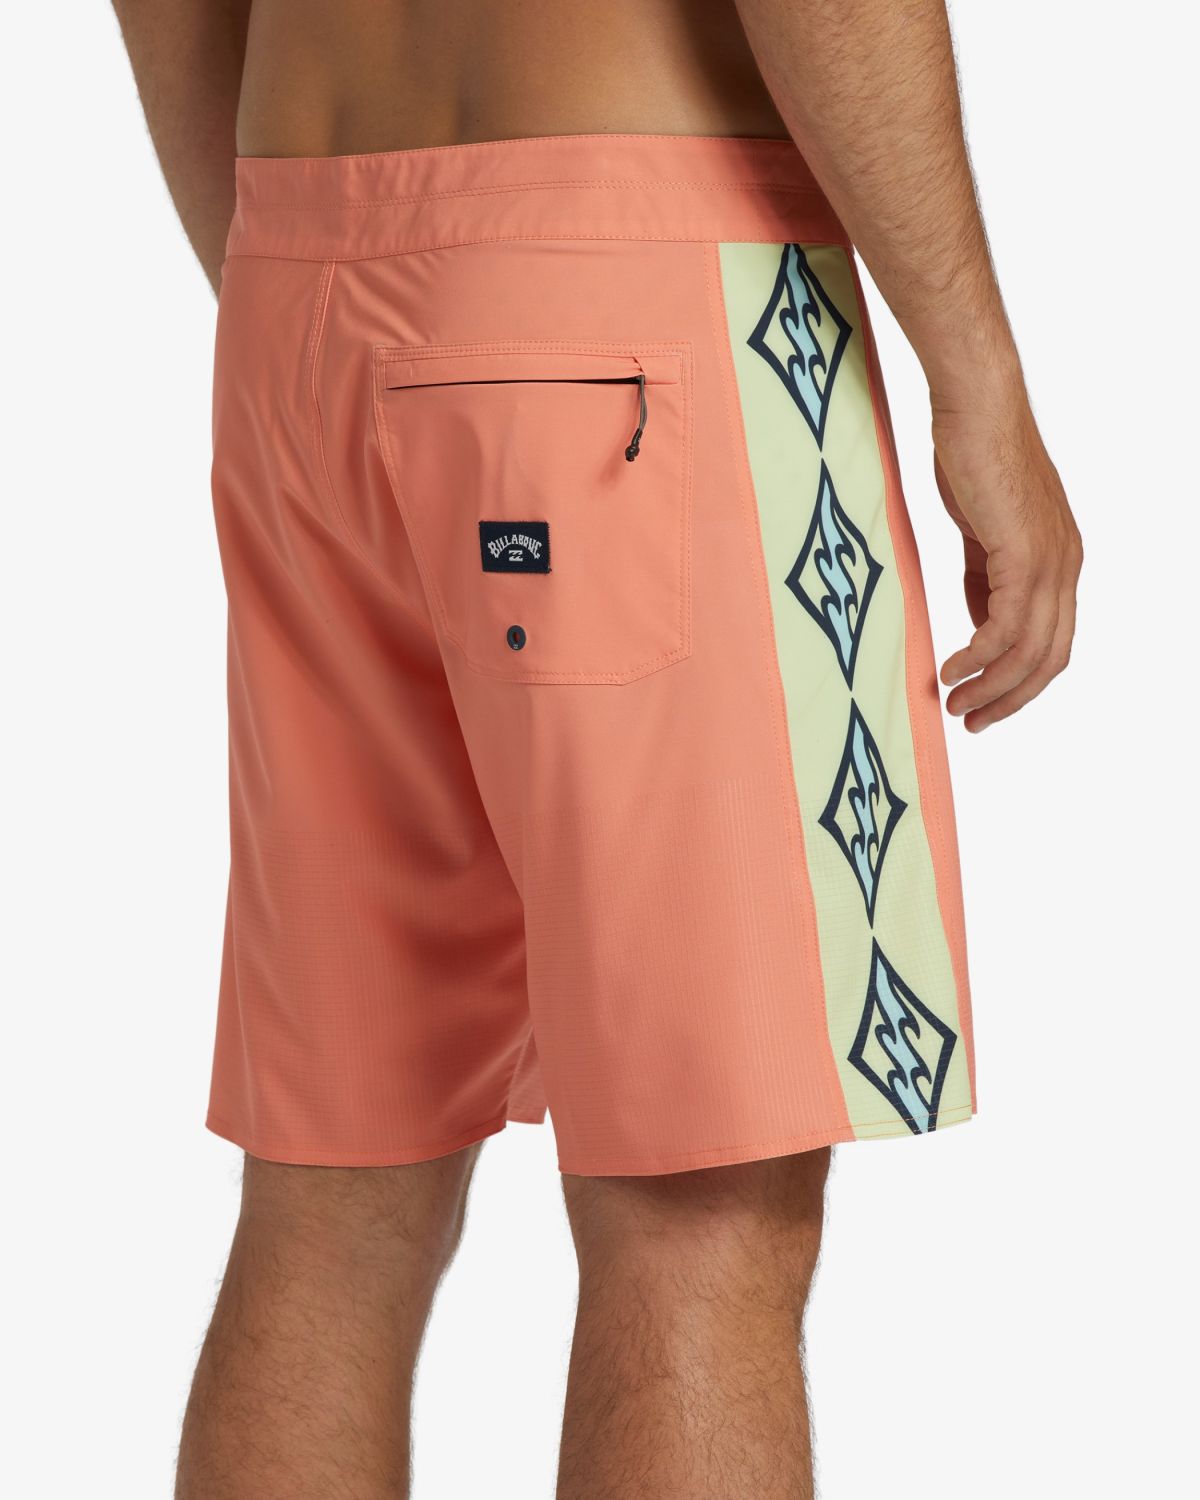  מכנסי בגד ים בהדפס לוגו של BILLABONG